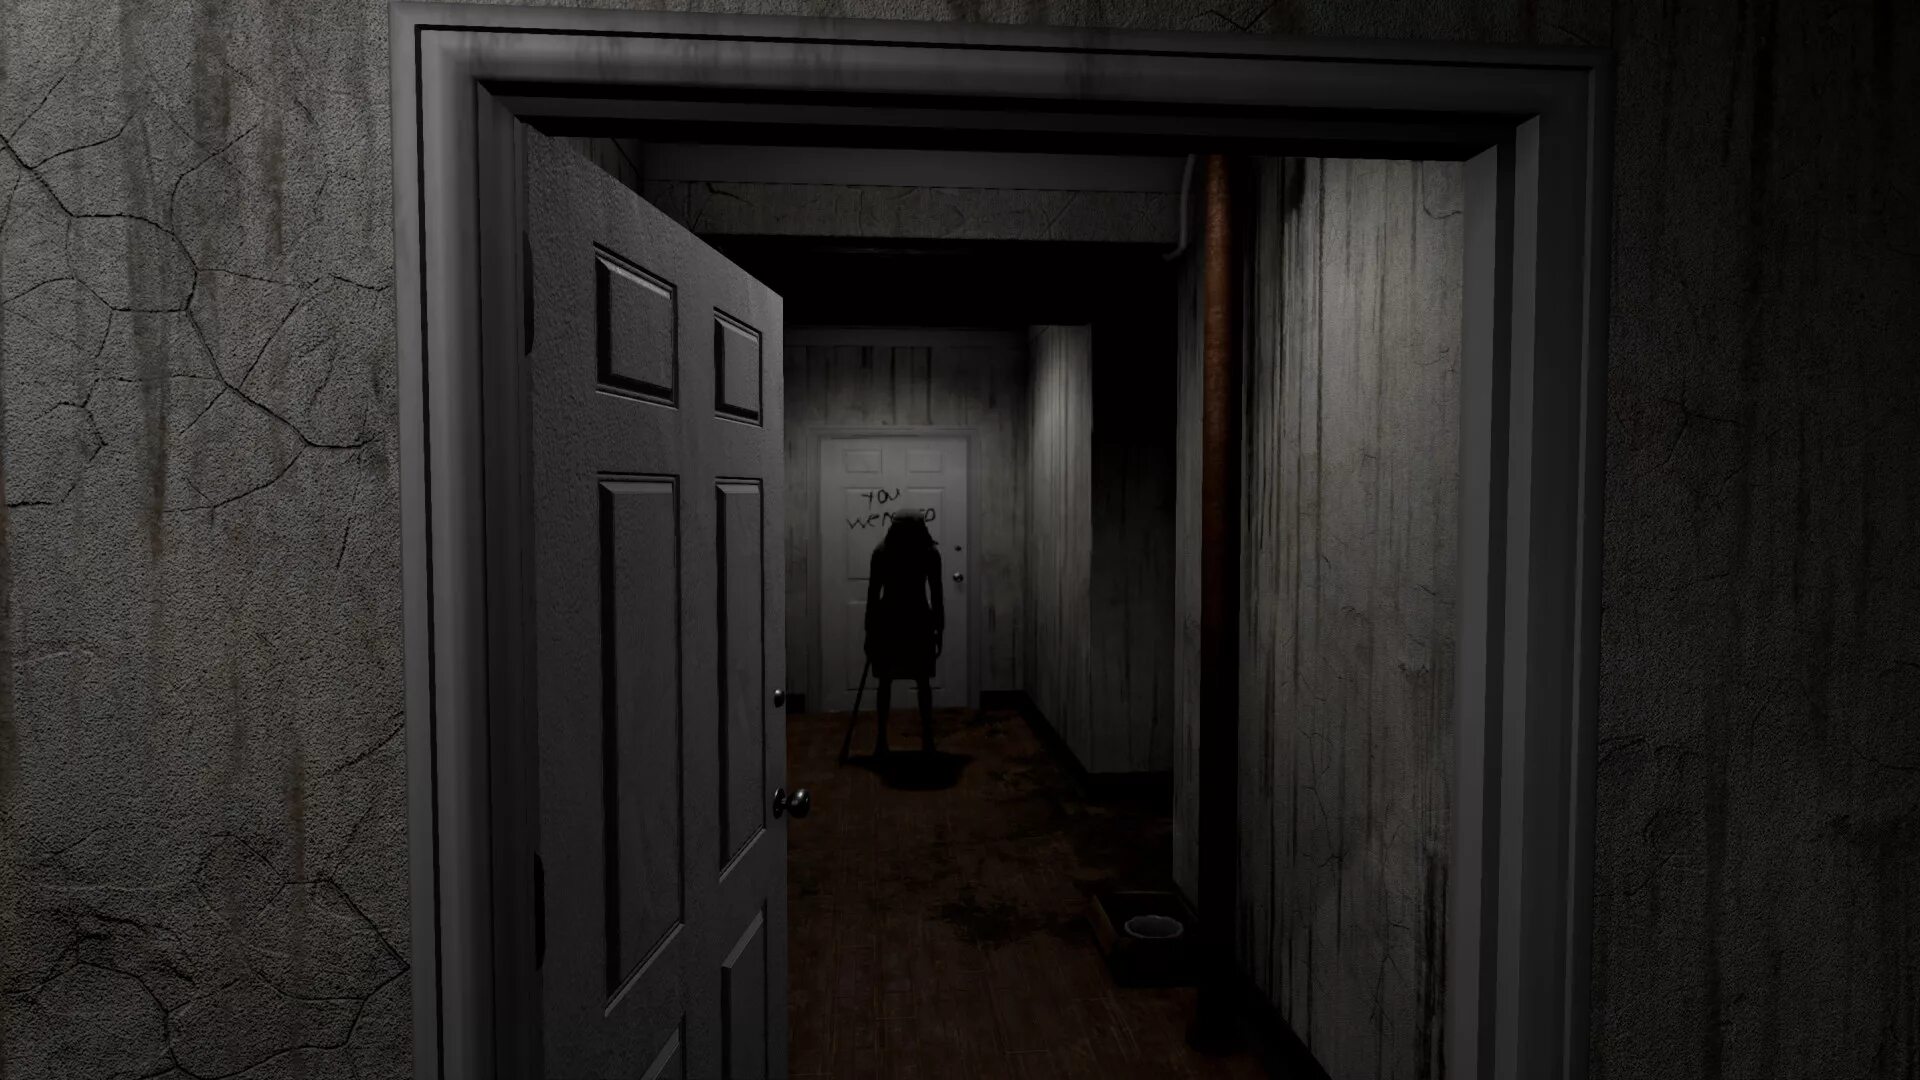 Коридоры игра хоррор. Страшный коридор. Страшная квартира. Темный страшный коридор. Мрачный коридор с дверями.